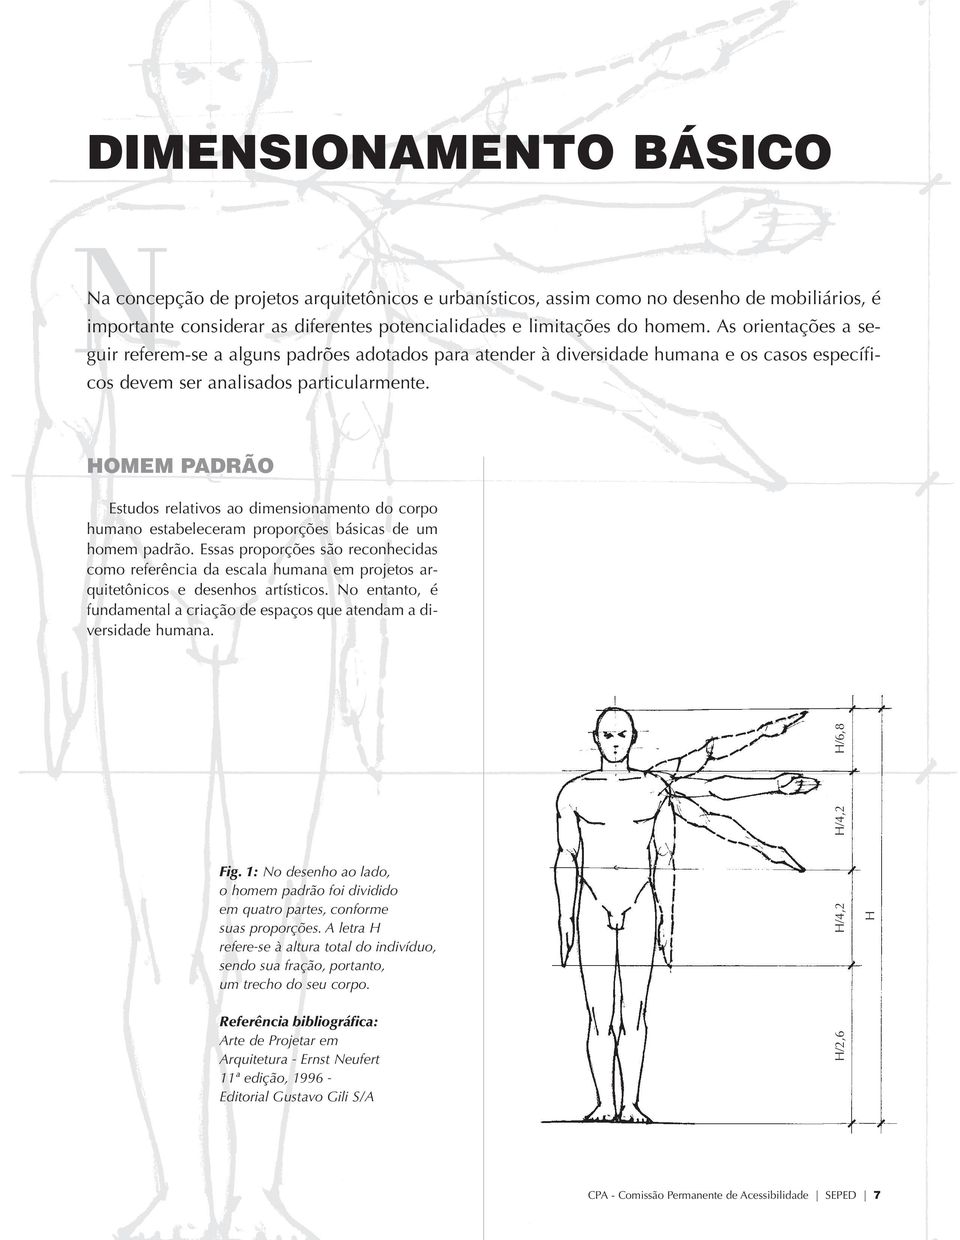 HOMEM PADRÃO Estudos relativos ao dimensionamento do corpo humano estabeleceram proporções básicas de um homem padrão.